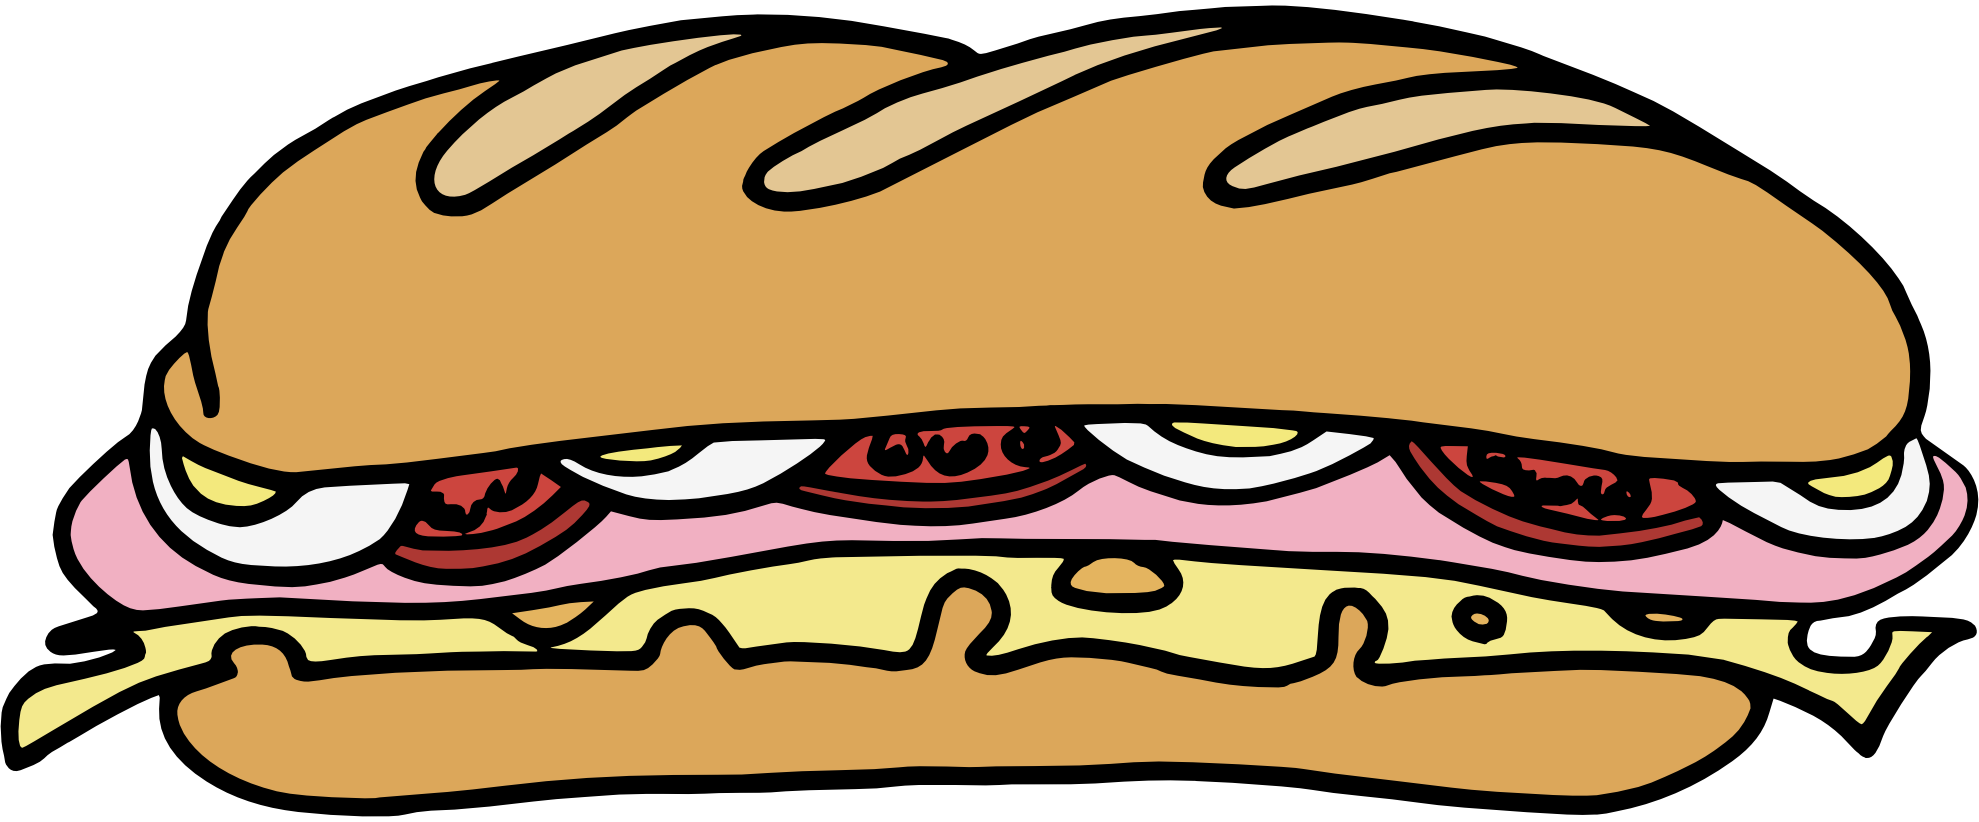 Sandwich clip art free clipart images